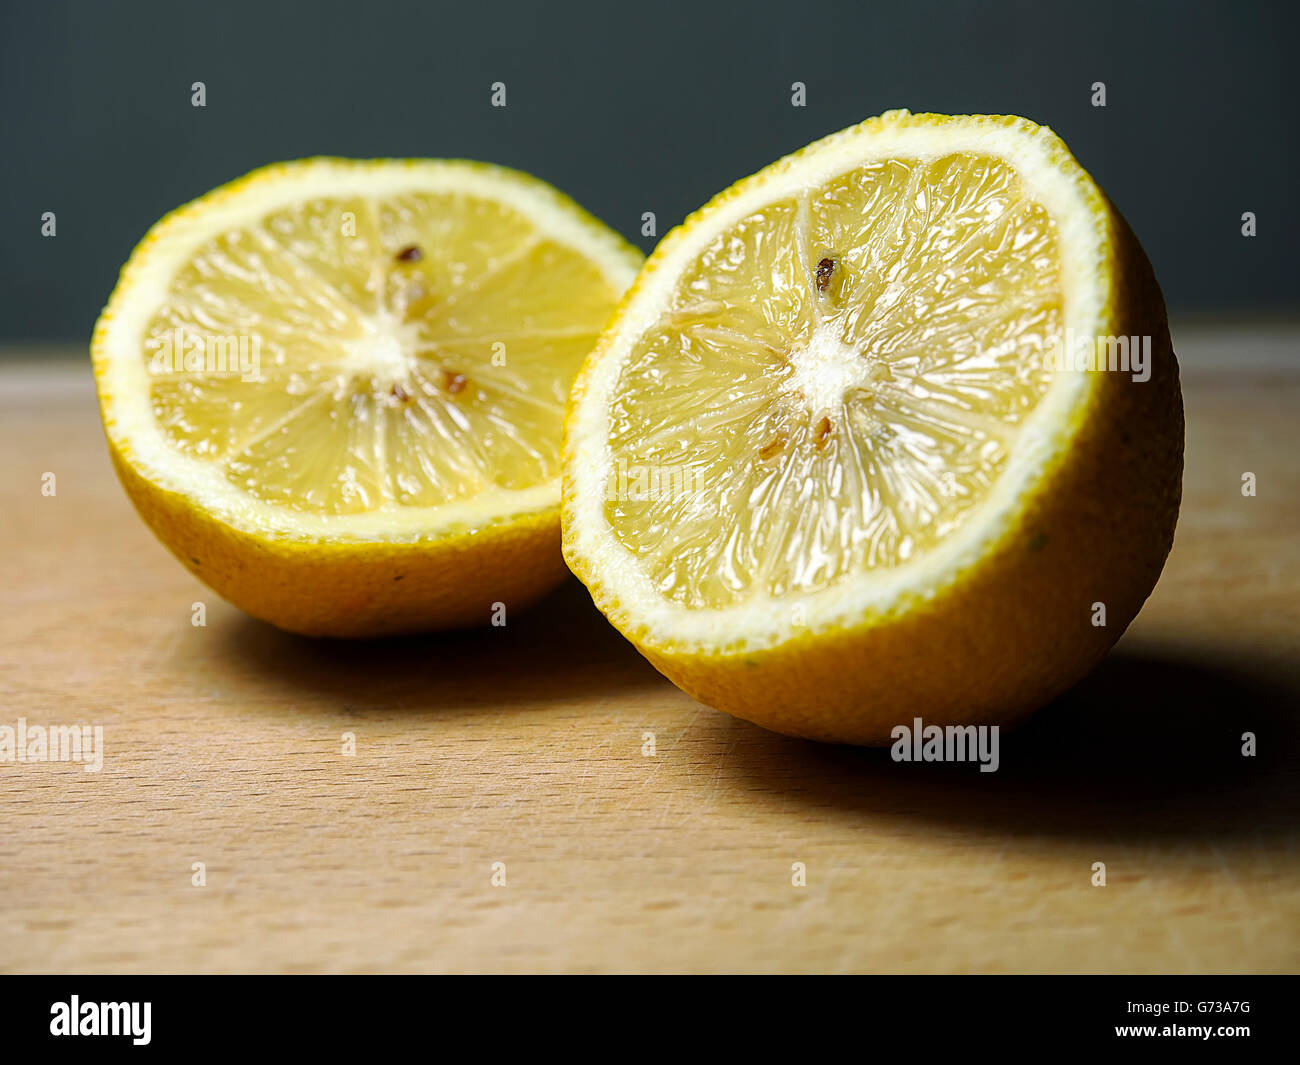 Cut lemon on a wooden board. Stock Photo